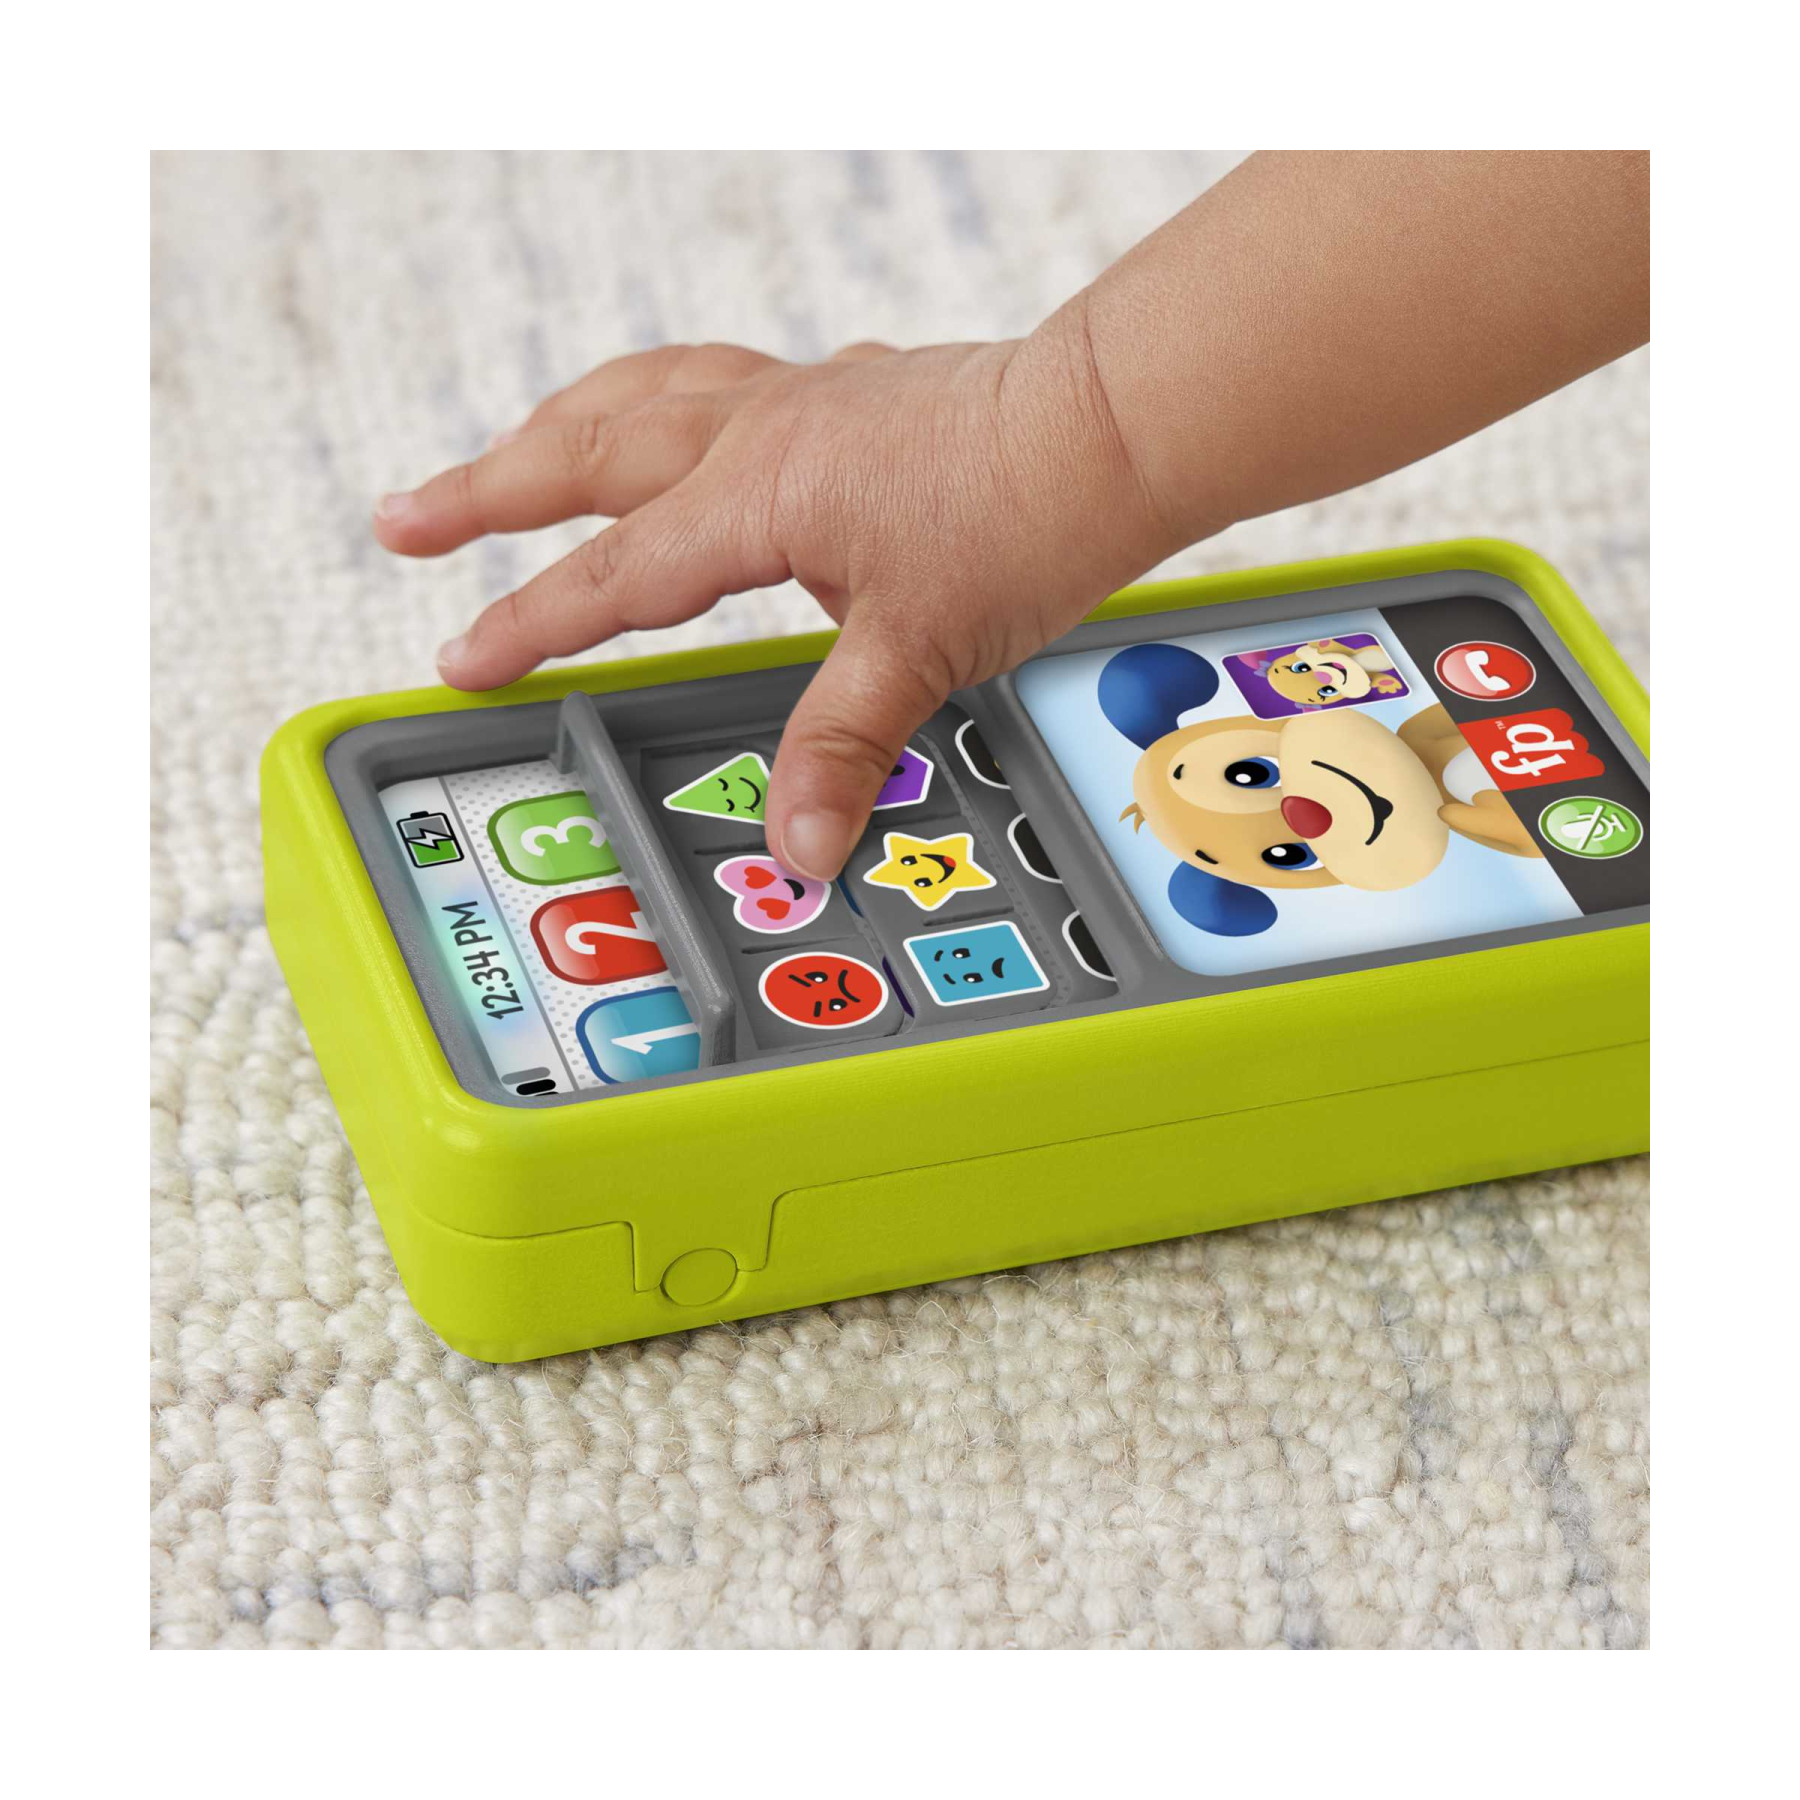 Fisher-price - smartphone scorri e impara, telefono giocattolo educativo con luci, musica e contenuti multilingue, giocattolo per bambini, 9-36 mesi, hnl45 - FISHER-PRICE